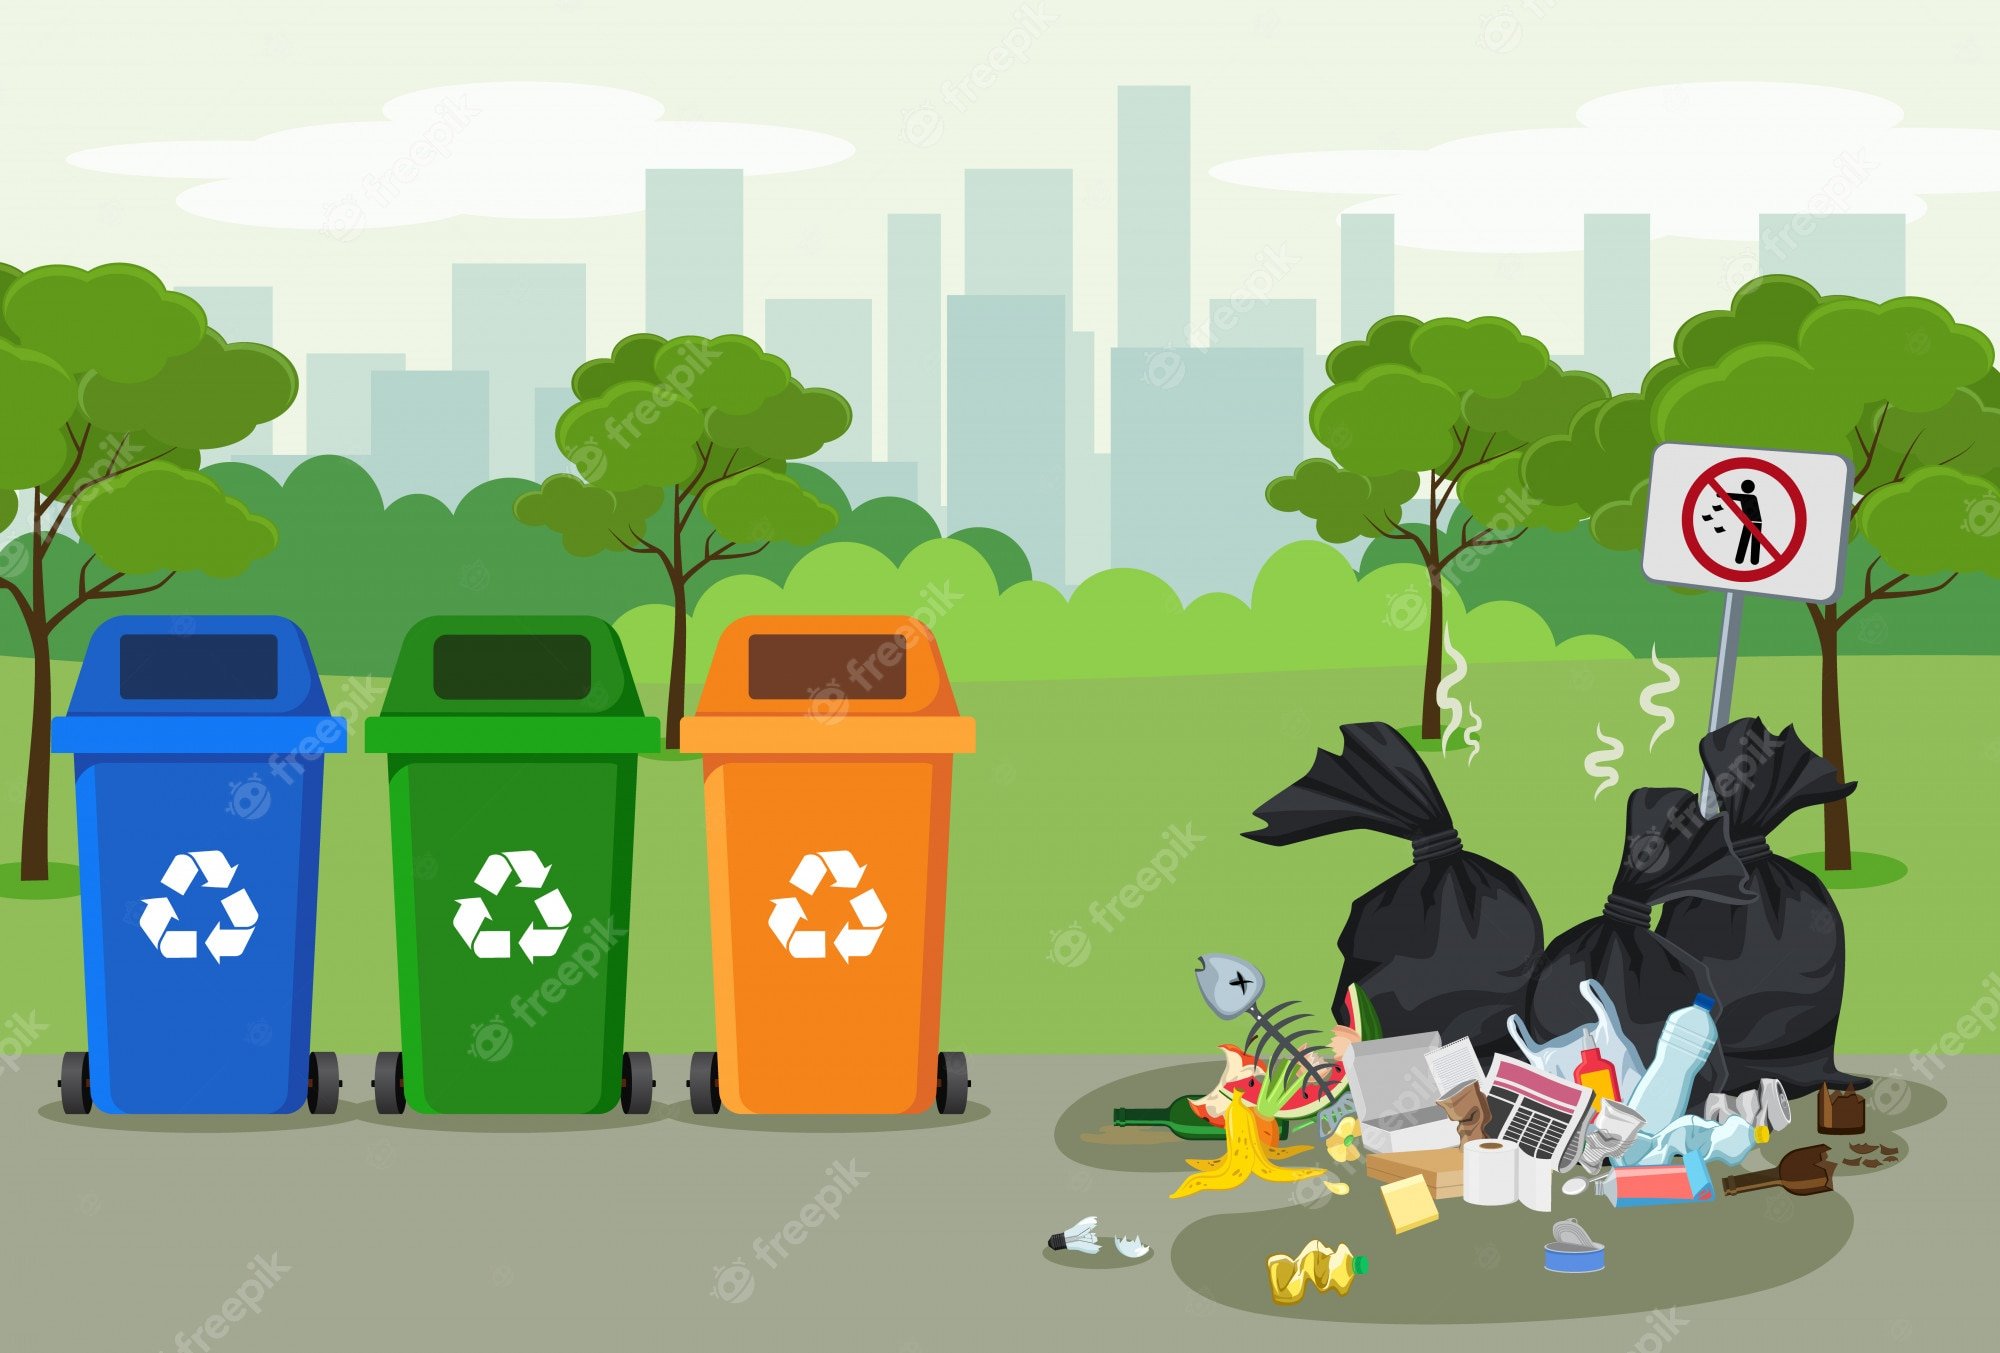 Убери мусорку. Загрязнение мусором окружающей среды. Мусорные баки экология.